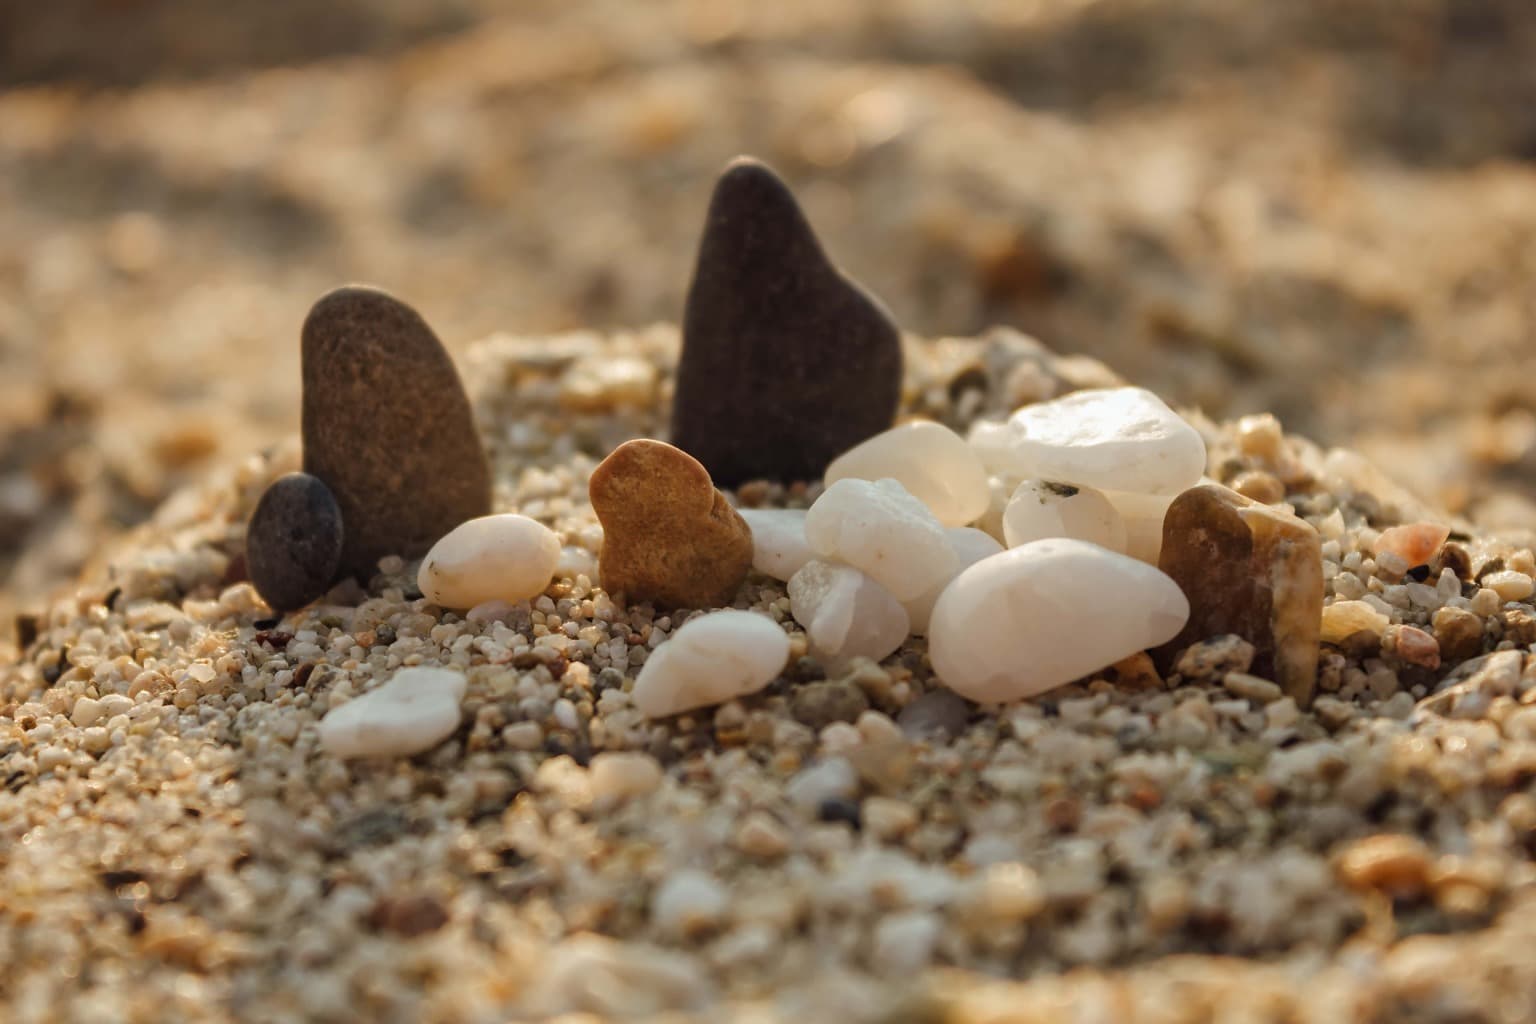 รูปภาพฟรี: ชายหาด, ทราย, หินกรวด, เซน, กรวด, ธรรมชาติ, ร็อค, เบลอ, พื้น ...